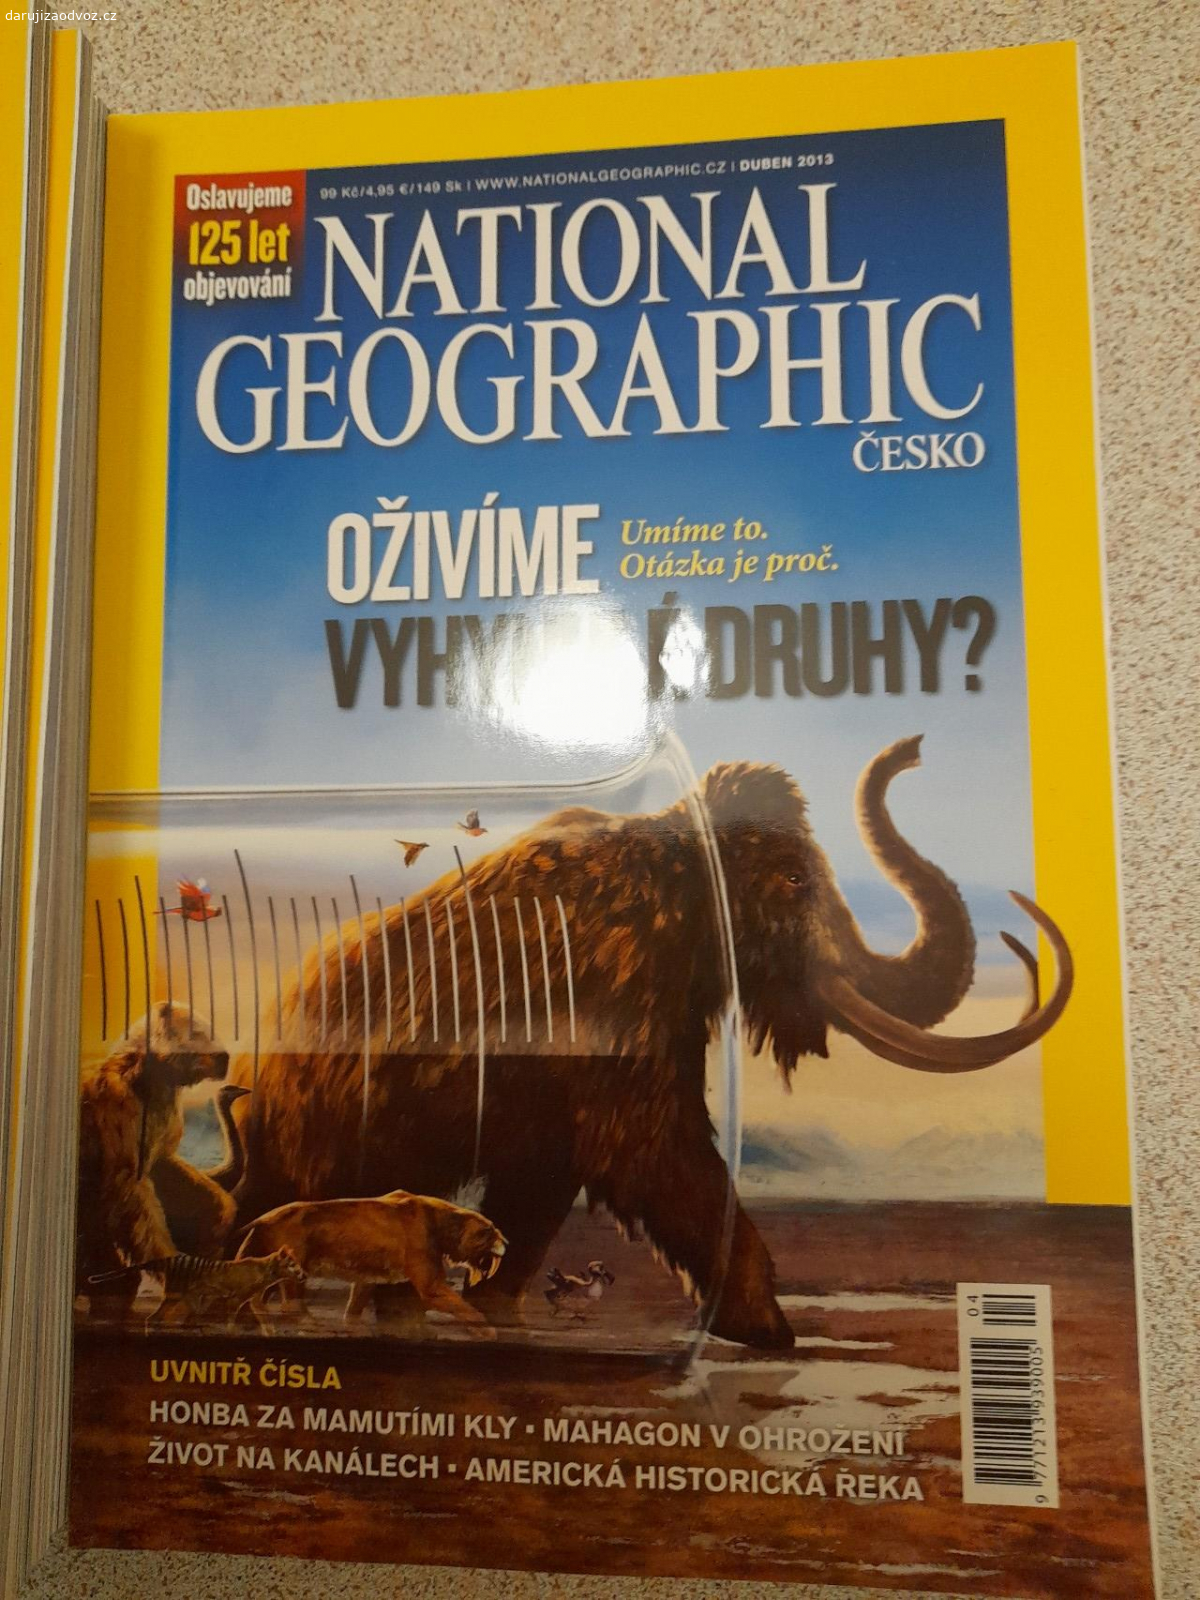 National Geographic časopisy. Daruji časopisy NG z let 2013, 2015, 2016 ad.

Vyzvednutí ul. Hrdlořezská, Praha 9.